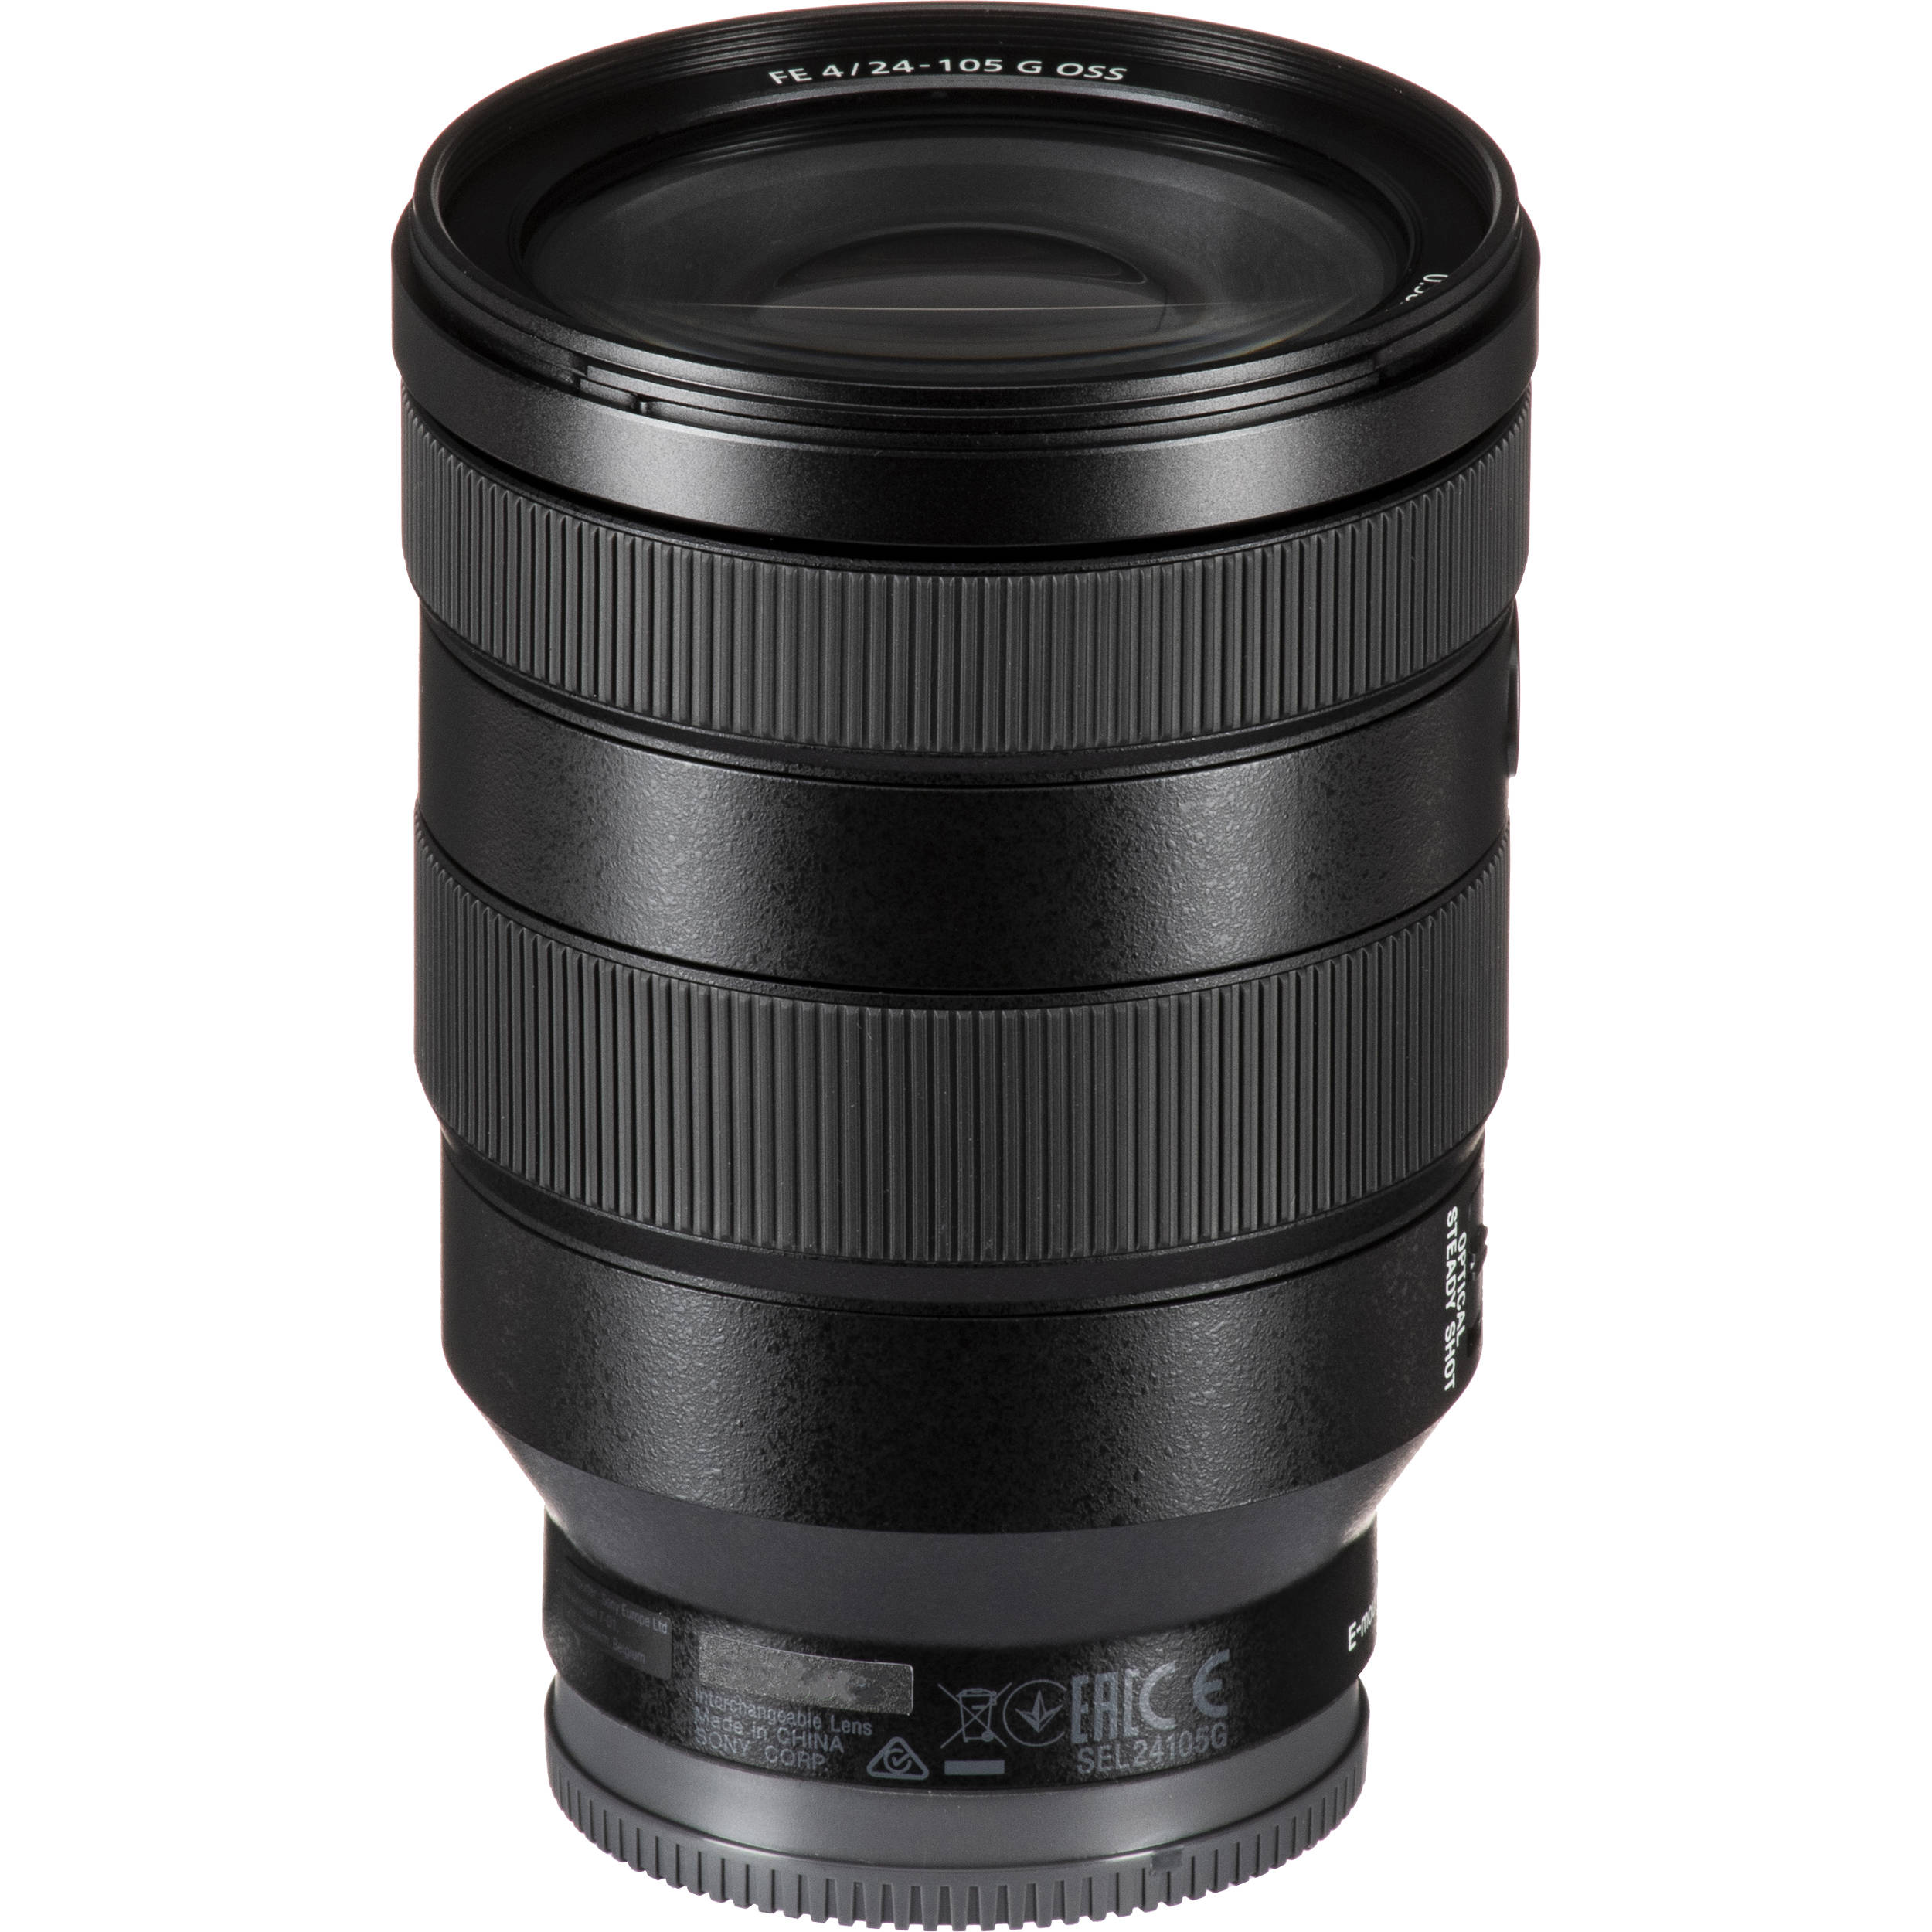 SONY FE 24-105 mm f / 4 g OSS Lens